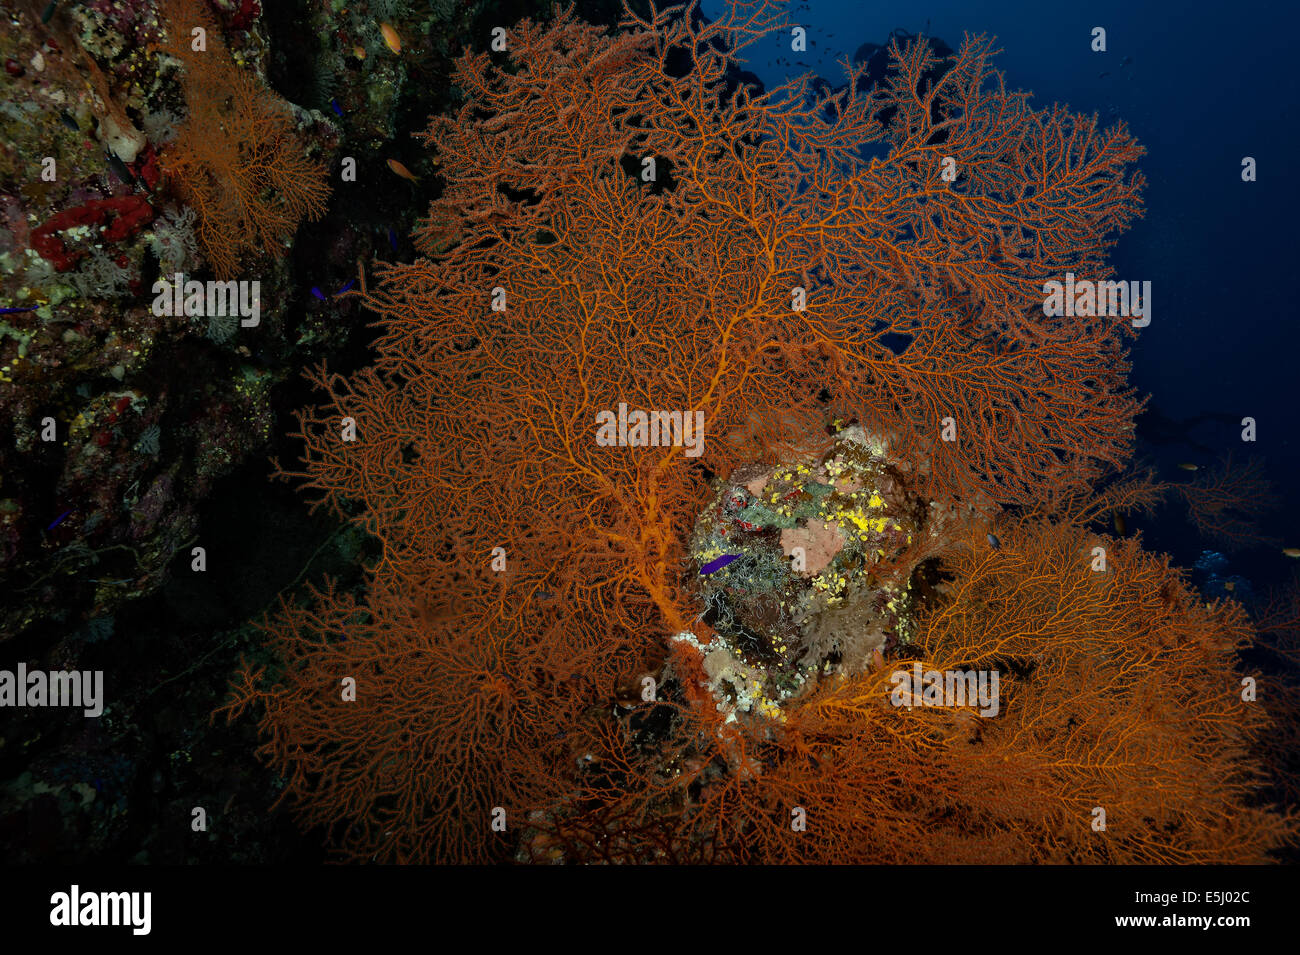 Üppigen Wachstum der Korallen im Roten Meer Küste von Sudan Stockfoto